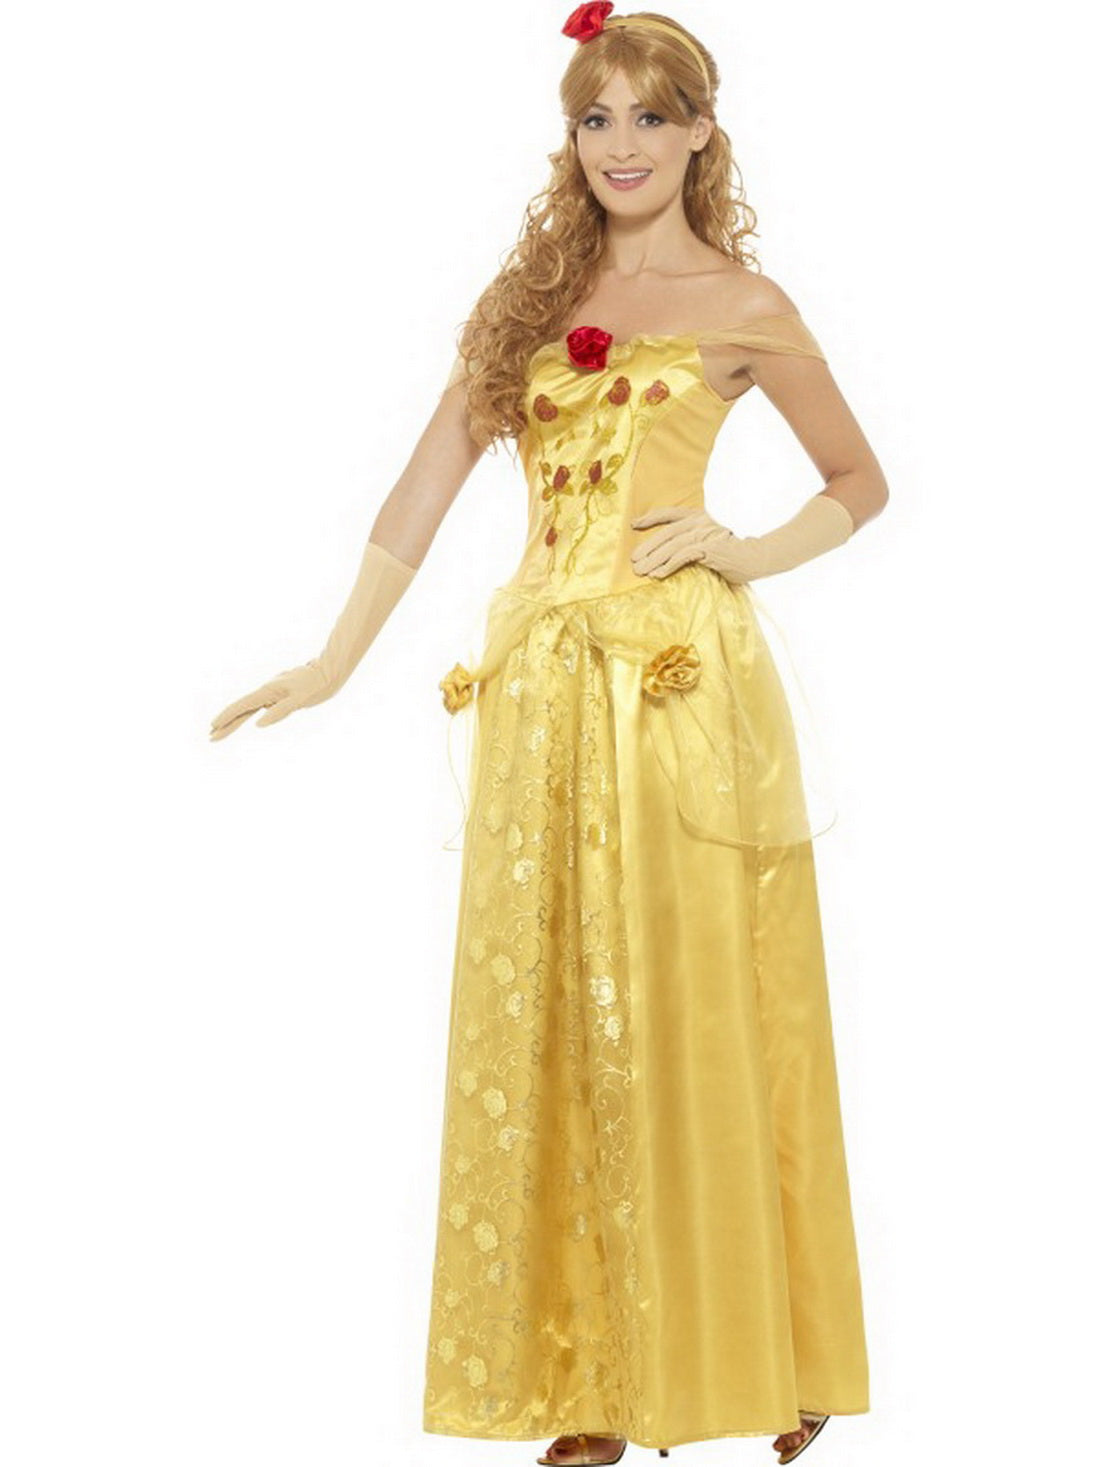 Damen Frauen Prinzessinen Kostüm mit langem Kleid, Handschuhe und Kopfschmuck, perfekt für Karneval, Fasching und Fastnacht, S, Gelb